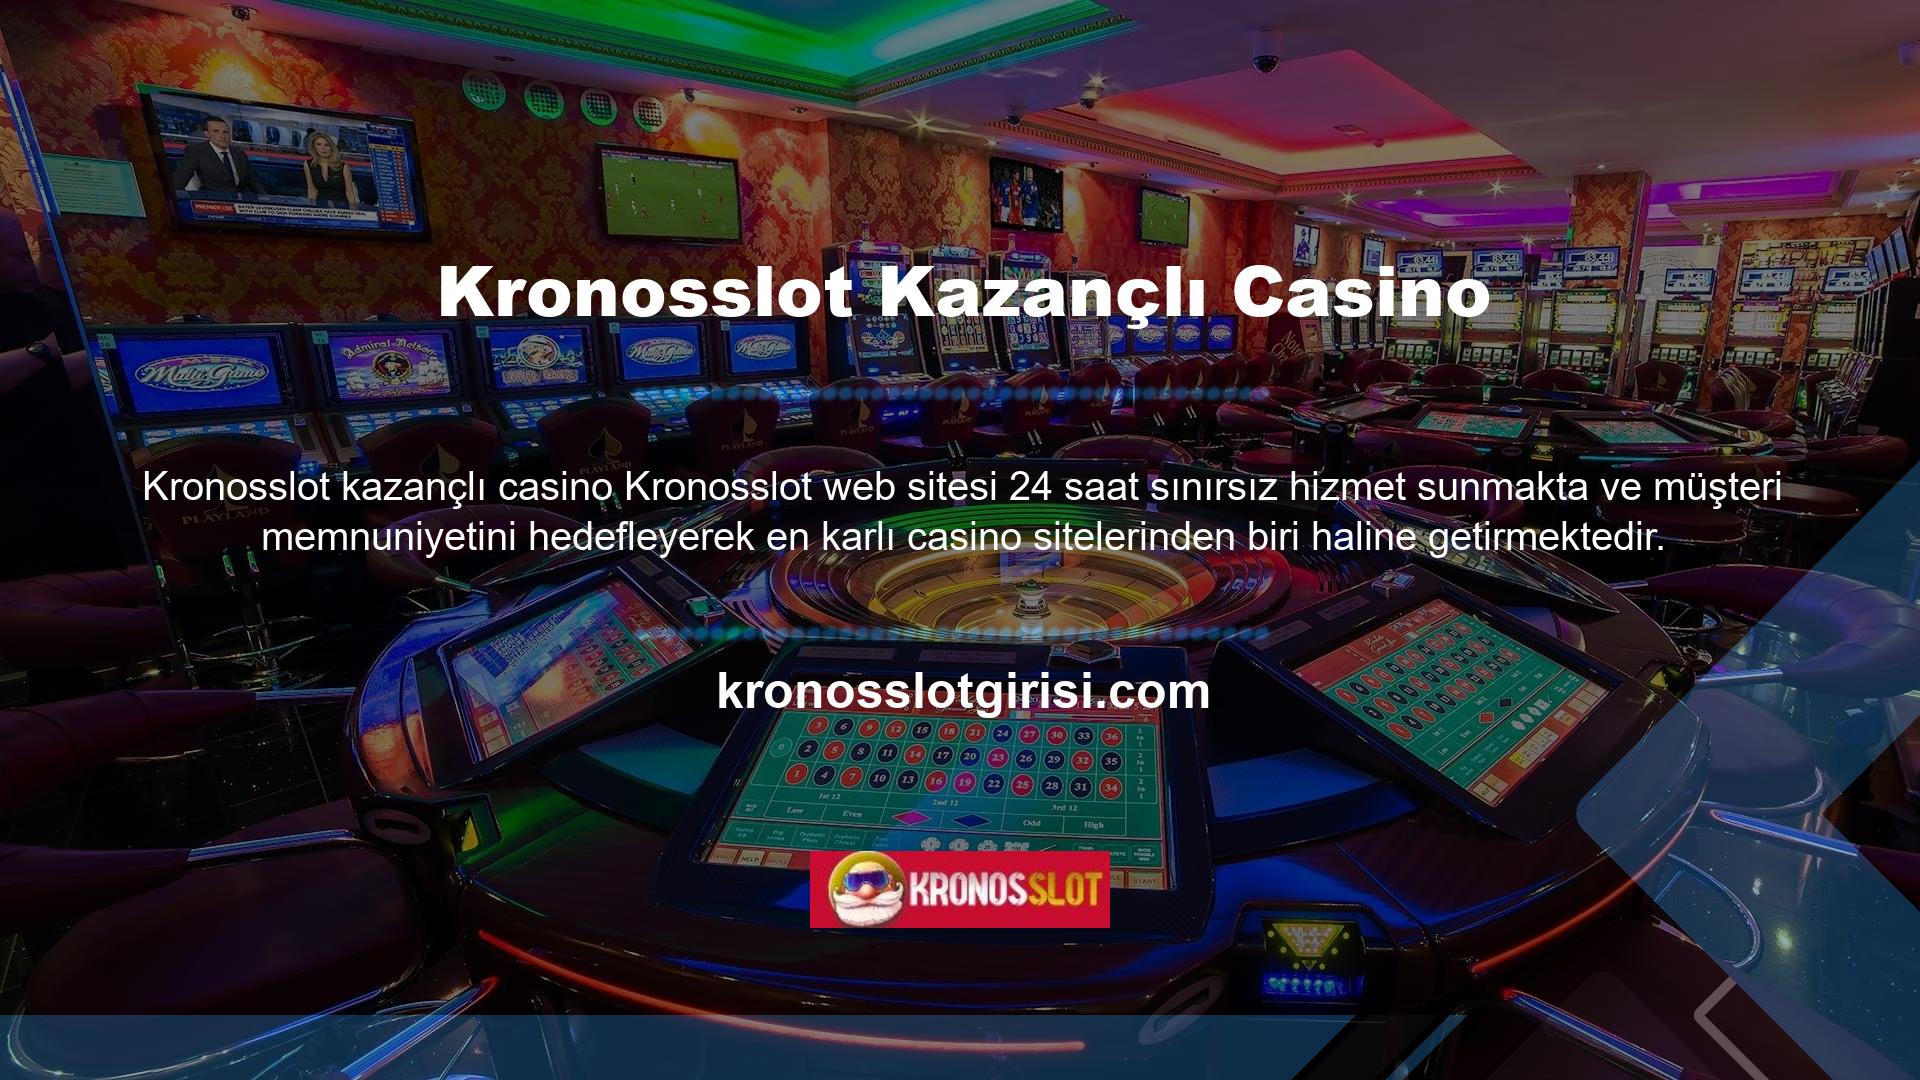 Verilen bilgilere göre Kronosslot Casino, para kazanmak isteyen kişilerin kolaylıkla üye olup oynayabileceği bir bahis sitesidir